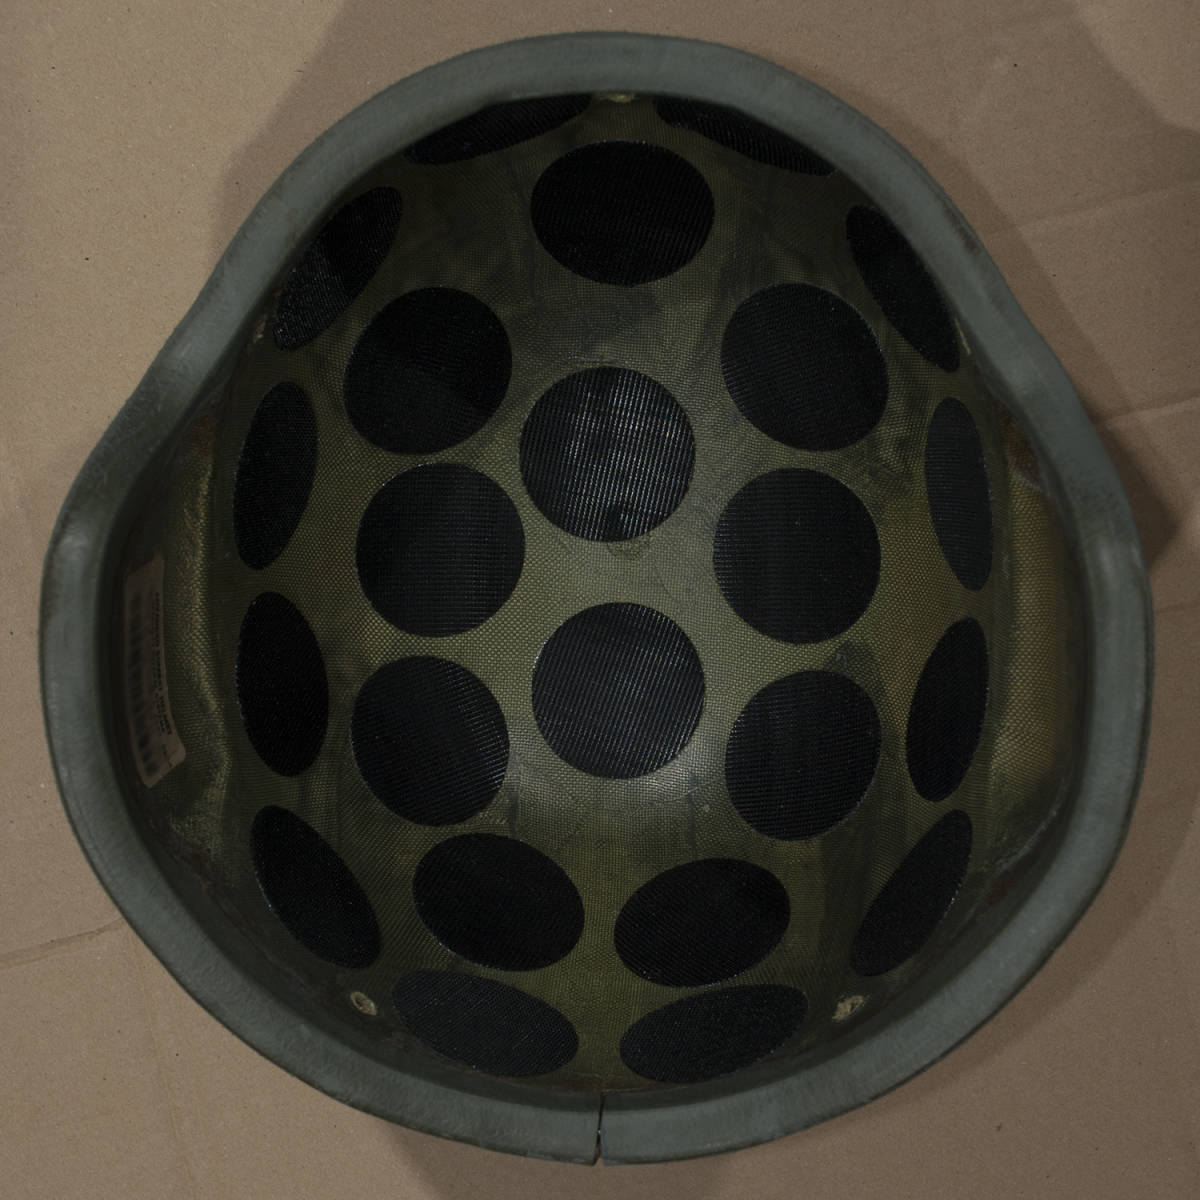 米軍実物 SDS製 ACH　M サイズ (Advanced Combat Helmet) M (MEDIUM ミディアム) コンバット ヘルメット ノーマル支_お送りする現物(画像にあるお品のみです)